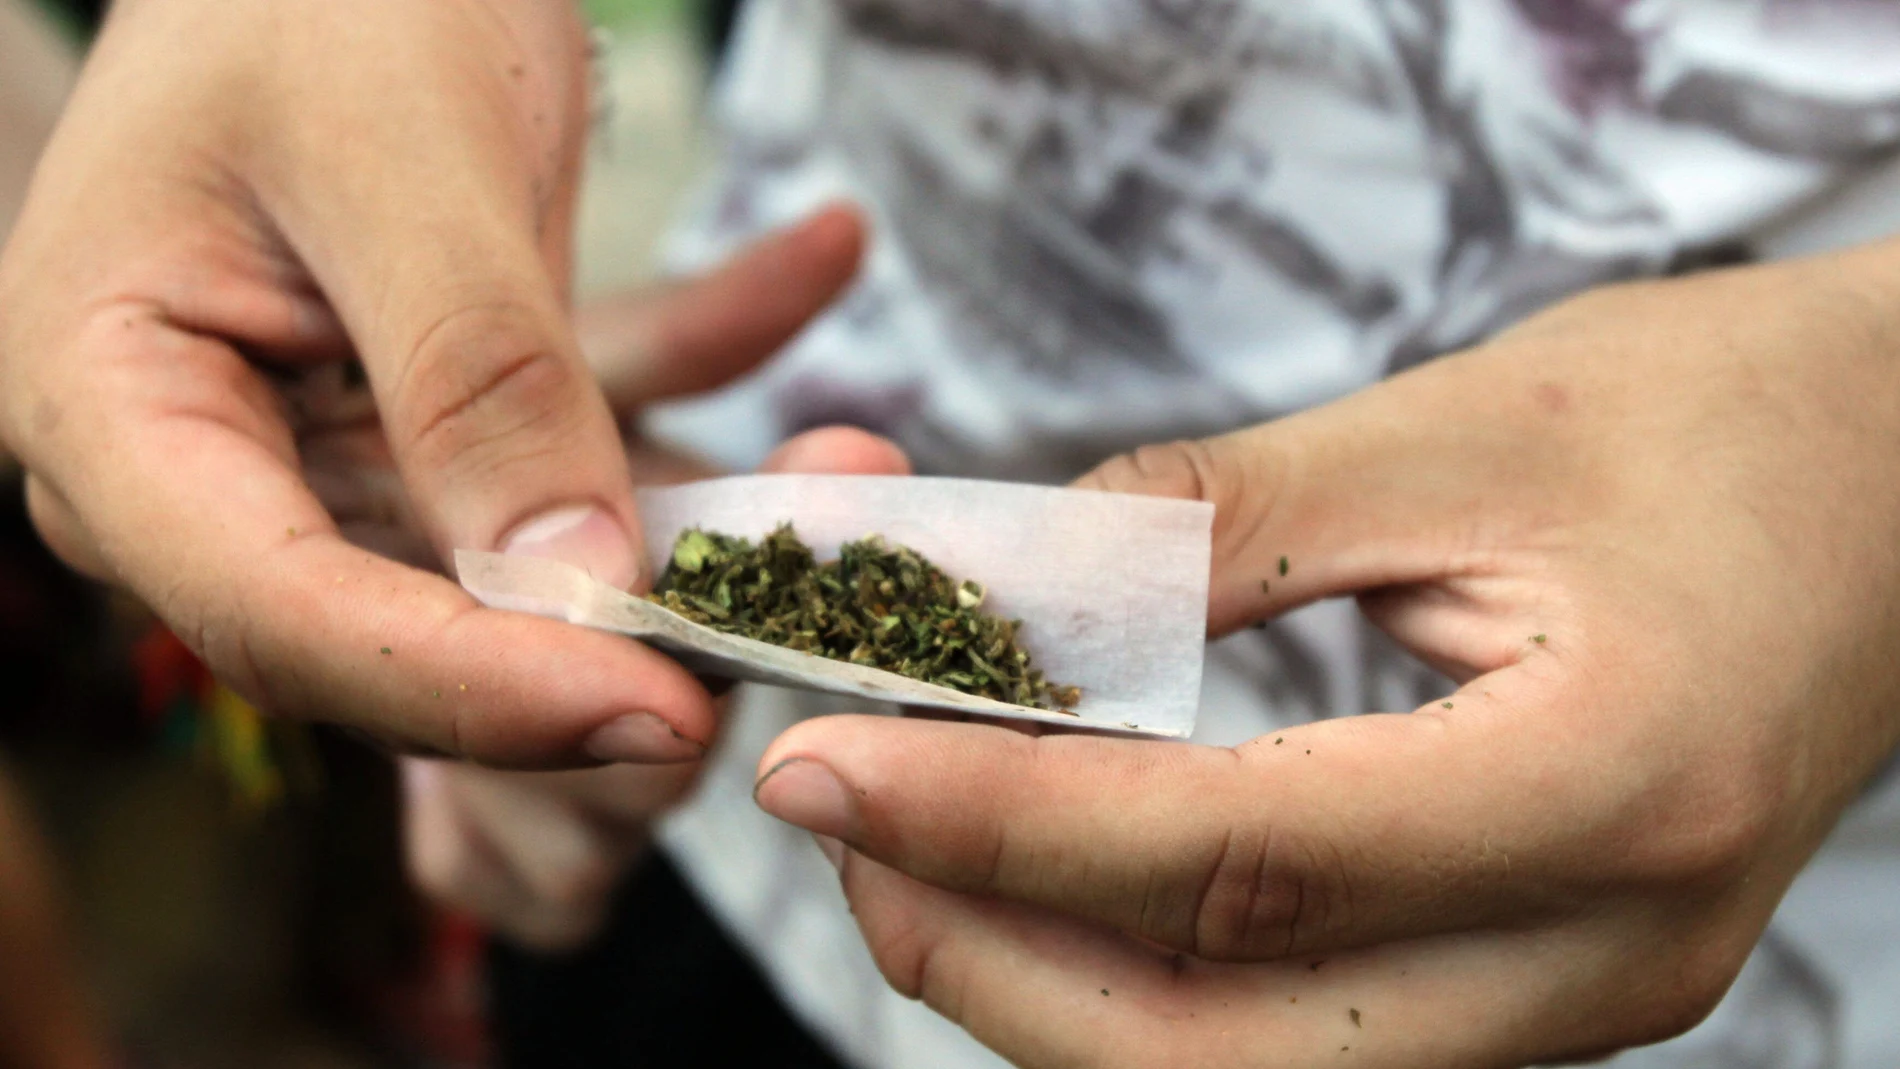 Un joven prepara un porro de marihuana, un derivado del cannabis, que sigue siendo la sustancia ilegal más consumida por los adolescentes